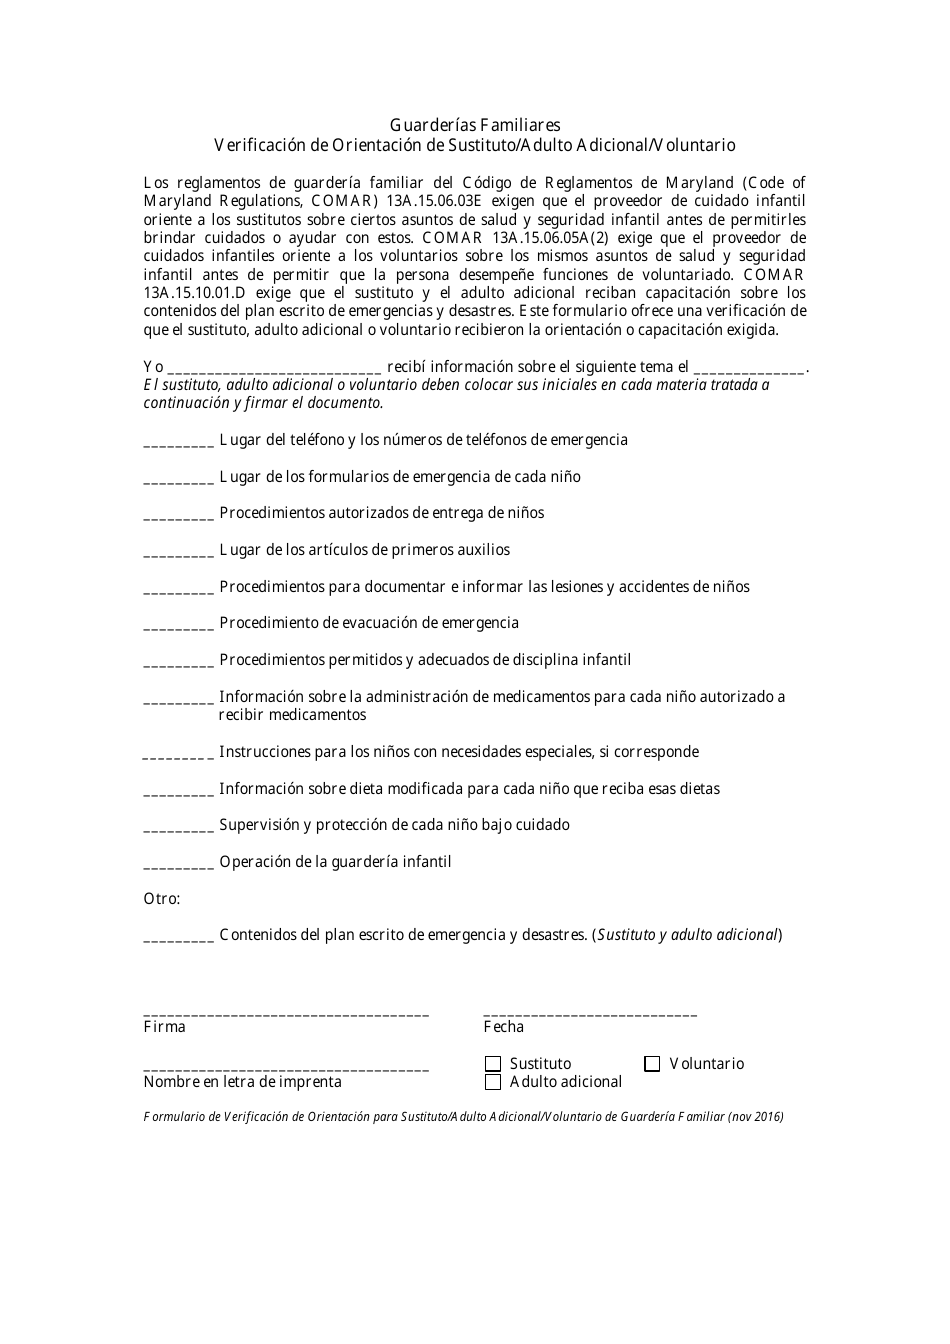 Verificacion De Orientacion De Sustituto / Adulto Adicional / Voluntario - Maryland (Spanish), Page 1